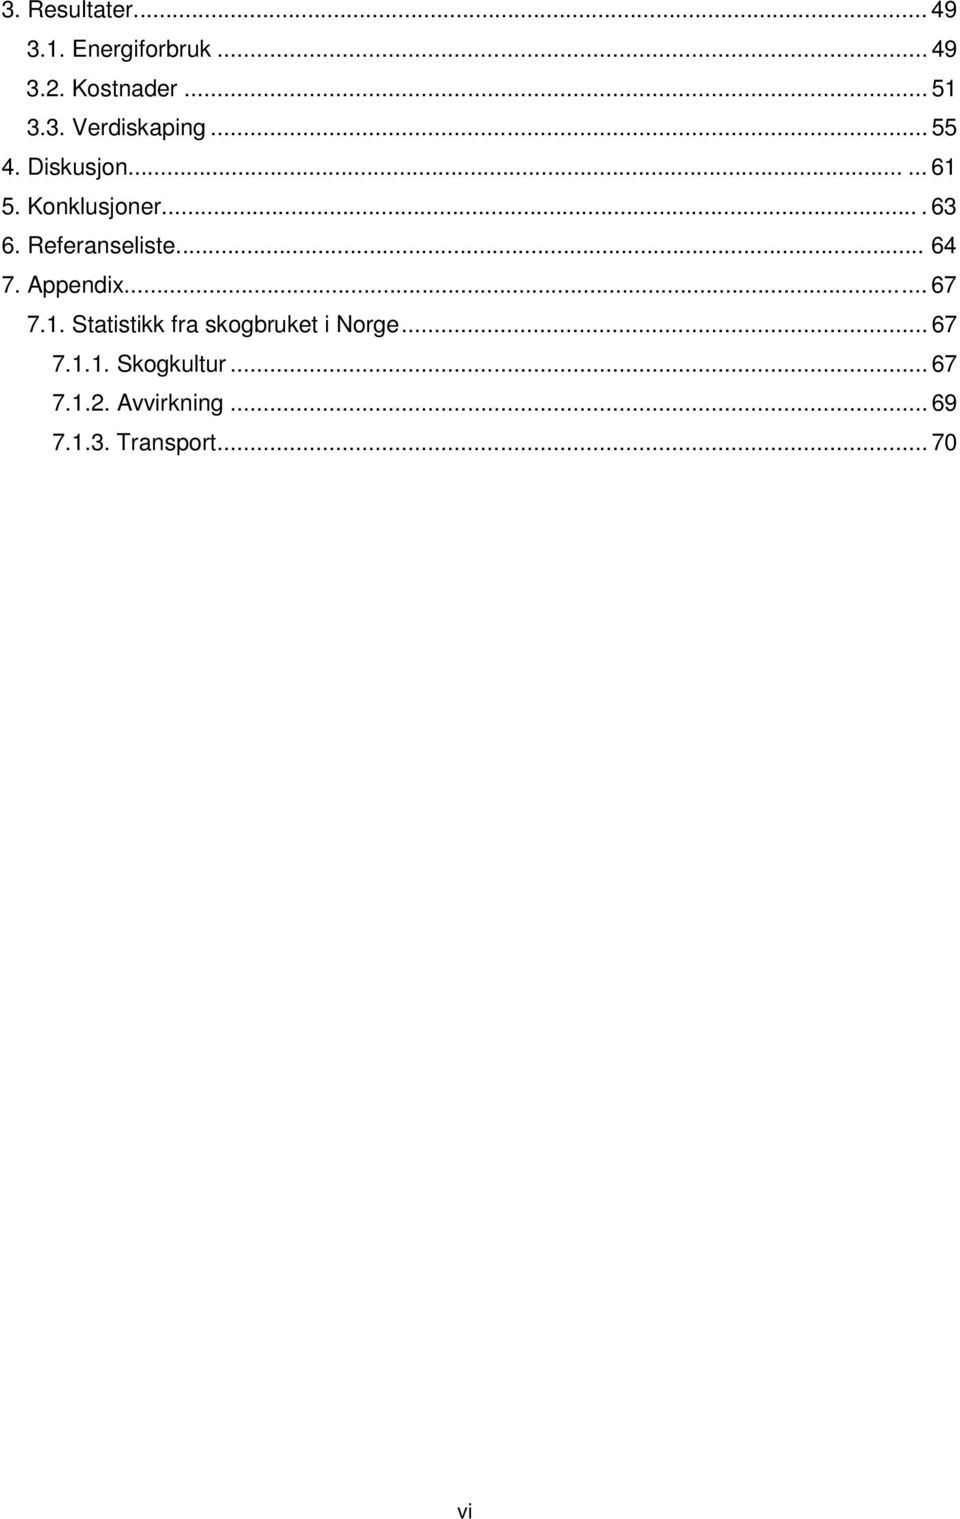 Appendix...... 67 7.1. Statistikk fra skogbruket i Norge... 67 7.1.1. Skogkultur.